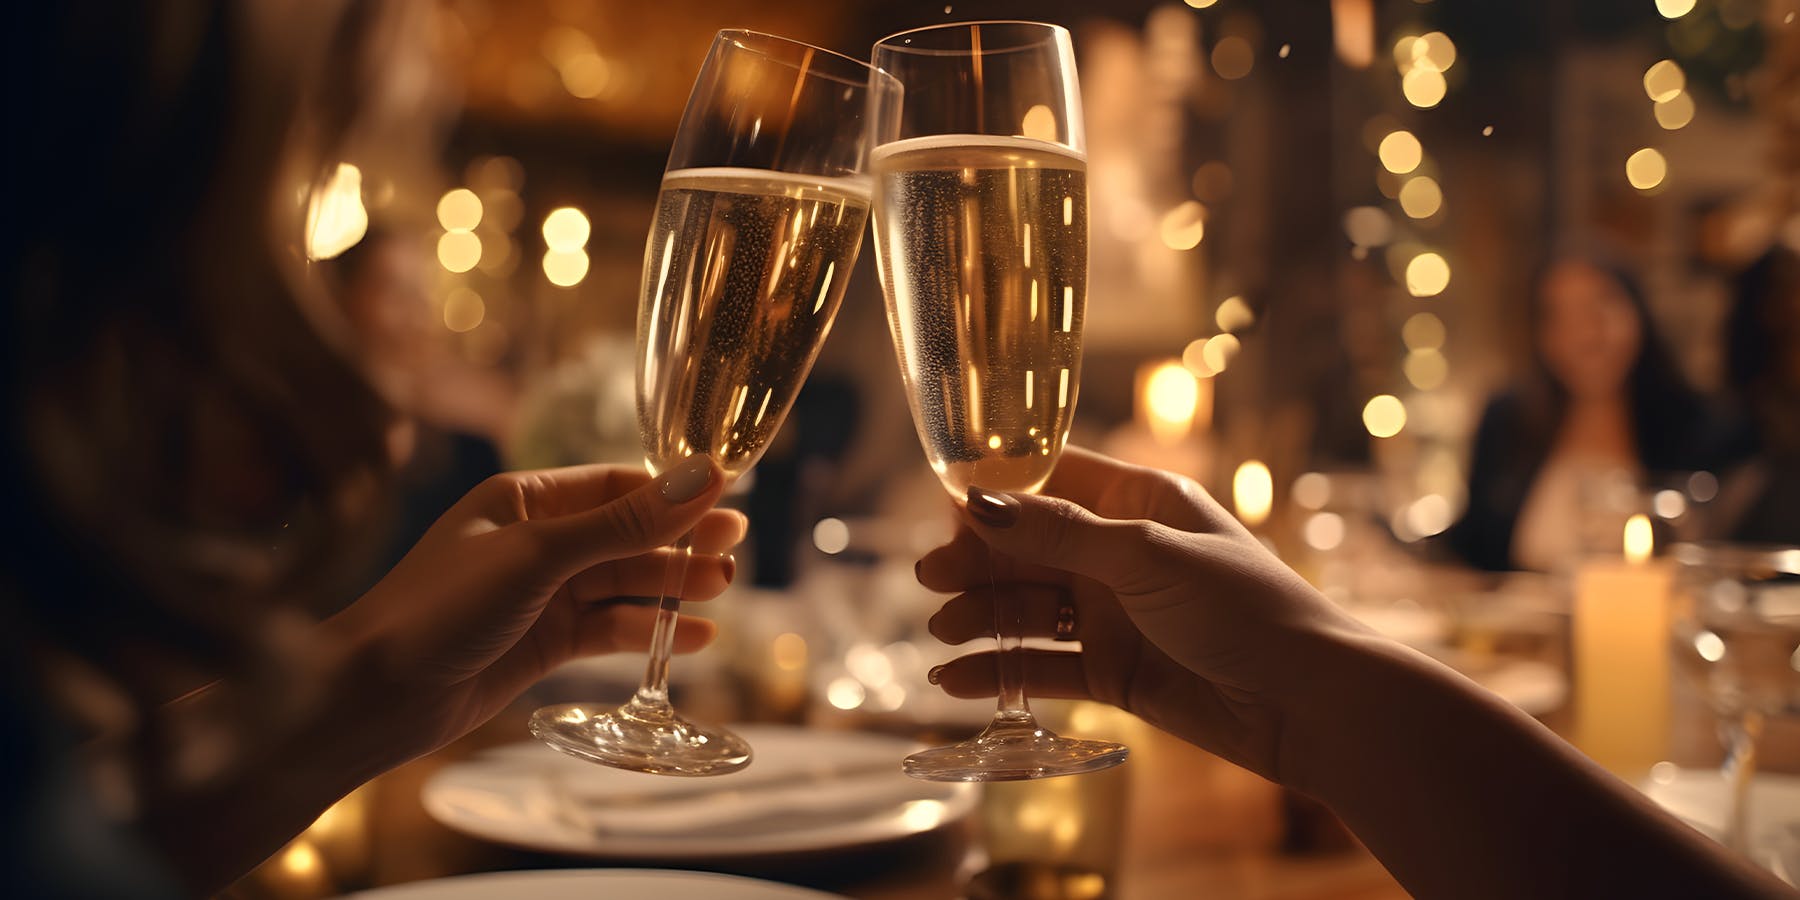 Noël approche, sélectionnez les champagnes U’wine pour accompagner vos célébrations. Élixir emblématique, il ravira les palais des plus exigeants !